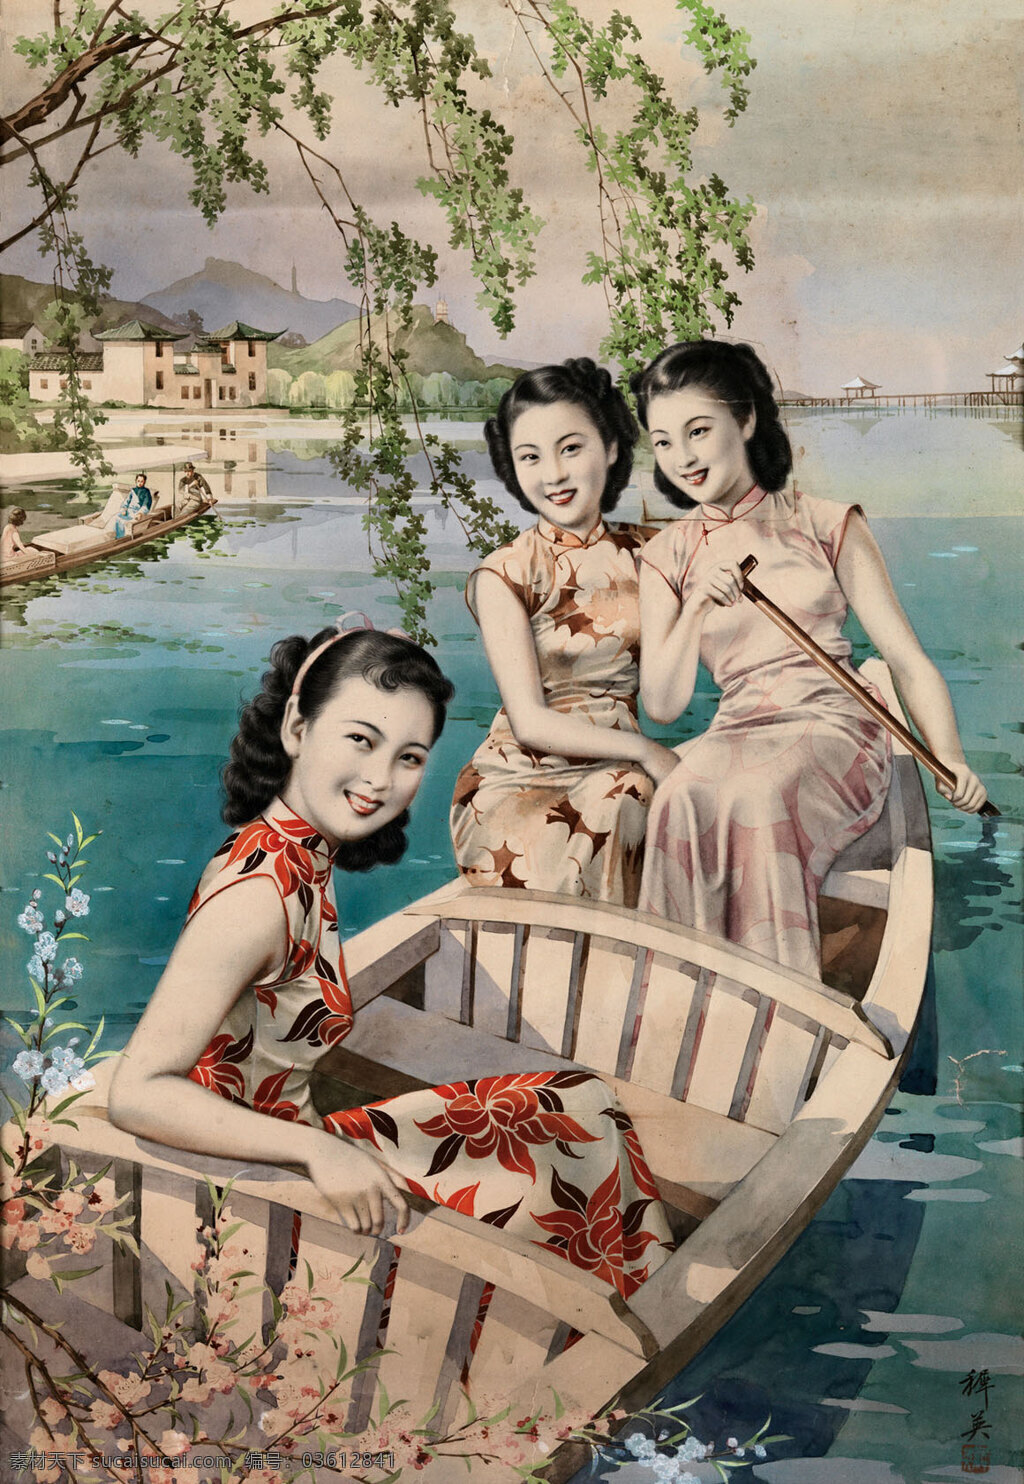 月份牌 美女 老上海 老广告 画报 传统文化 文化艺术